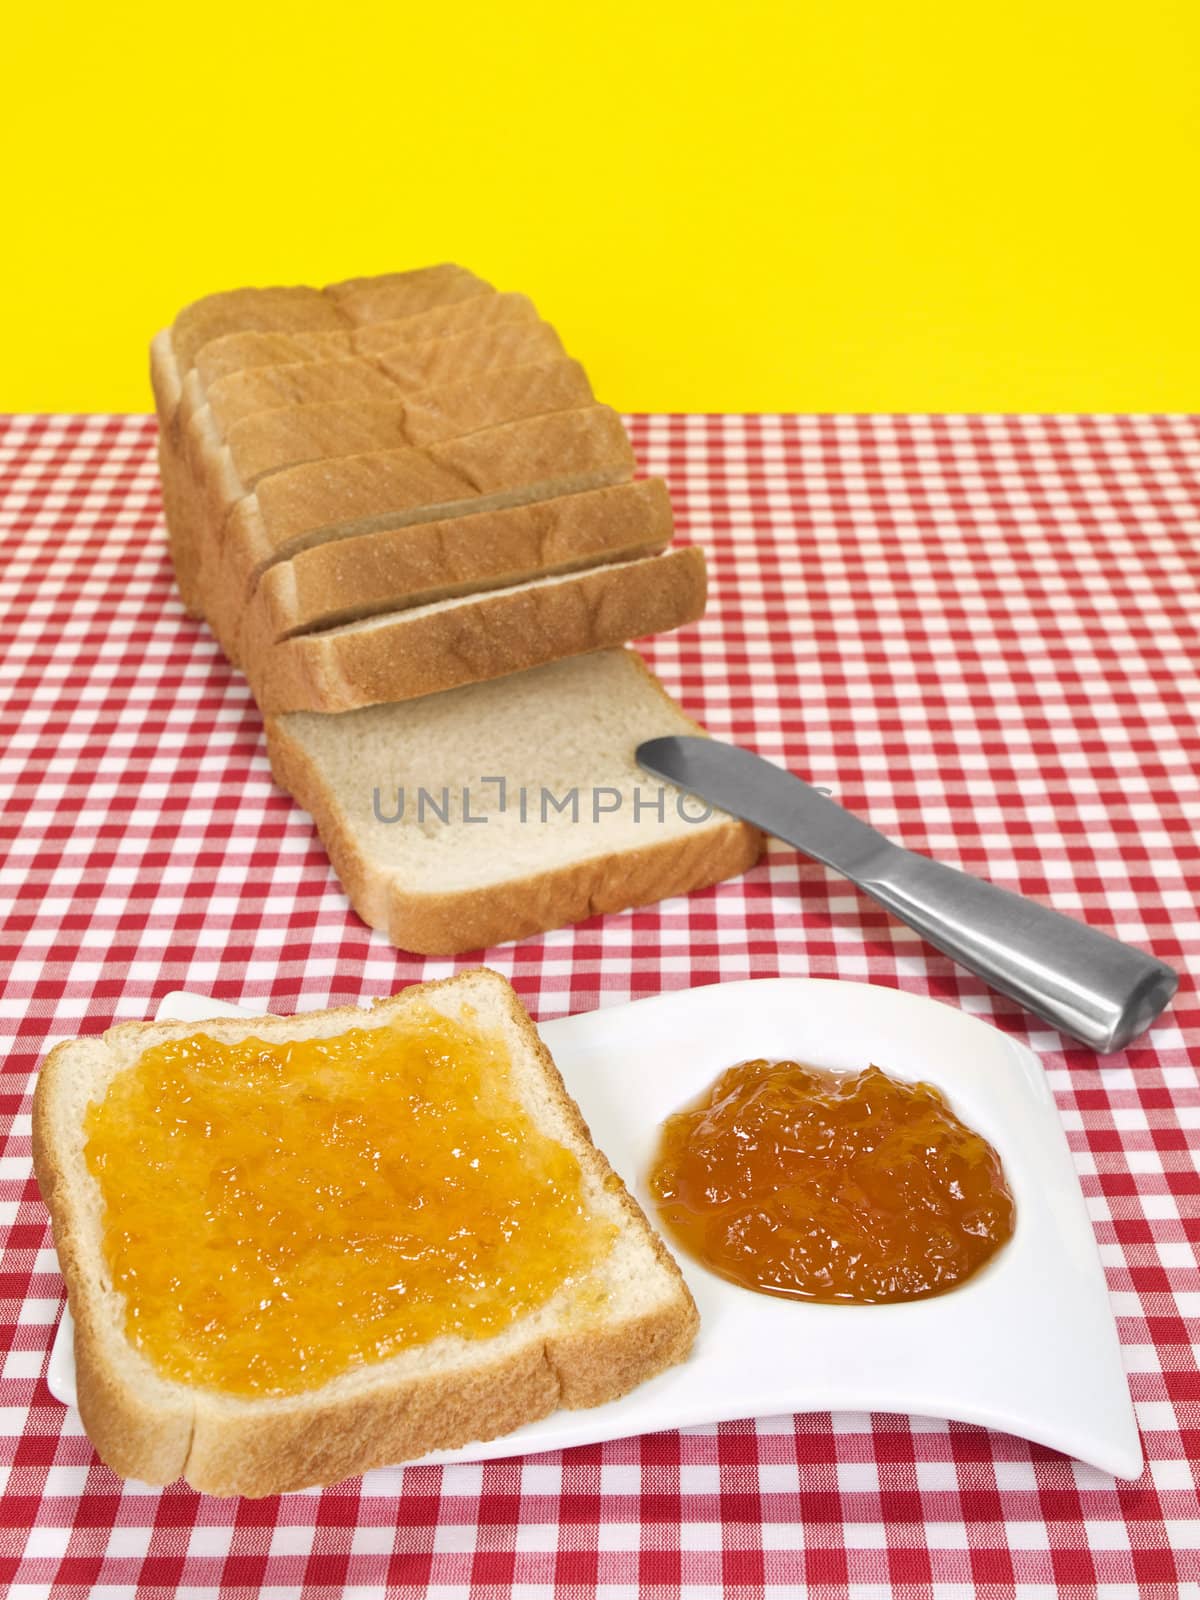 Bread and jam by antonprado